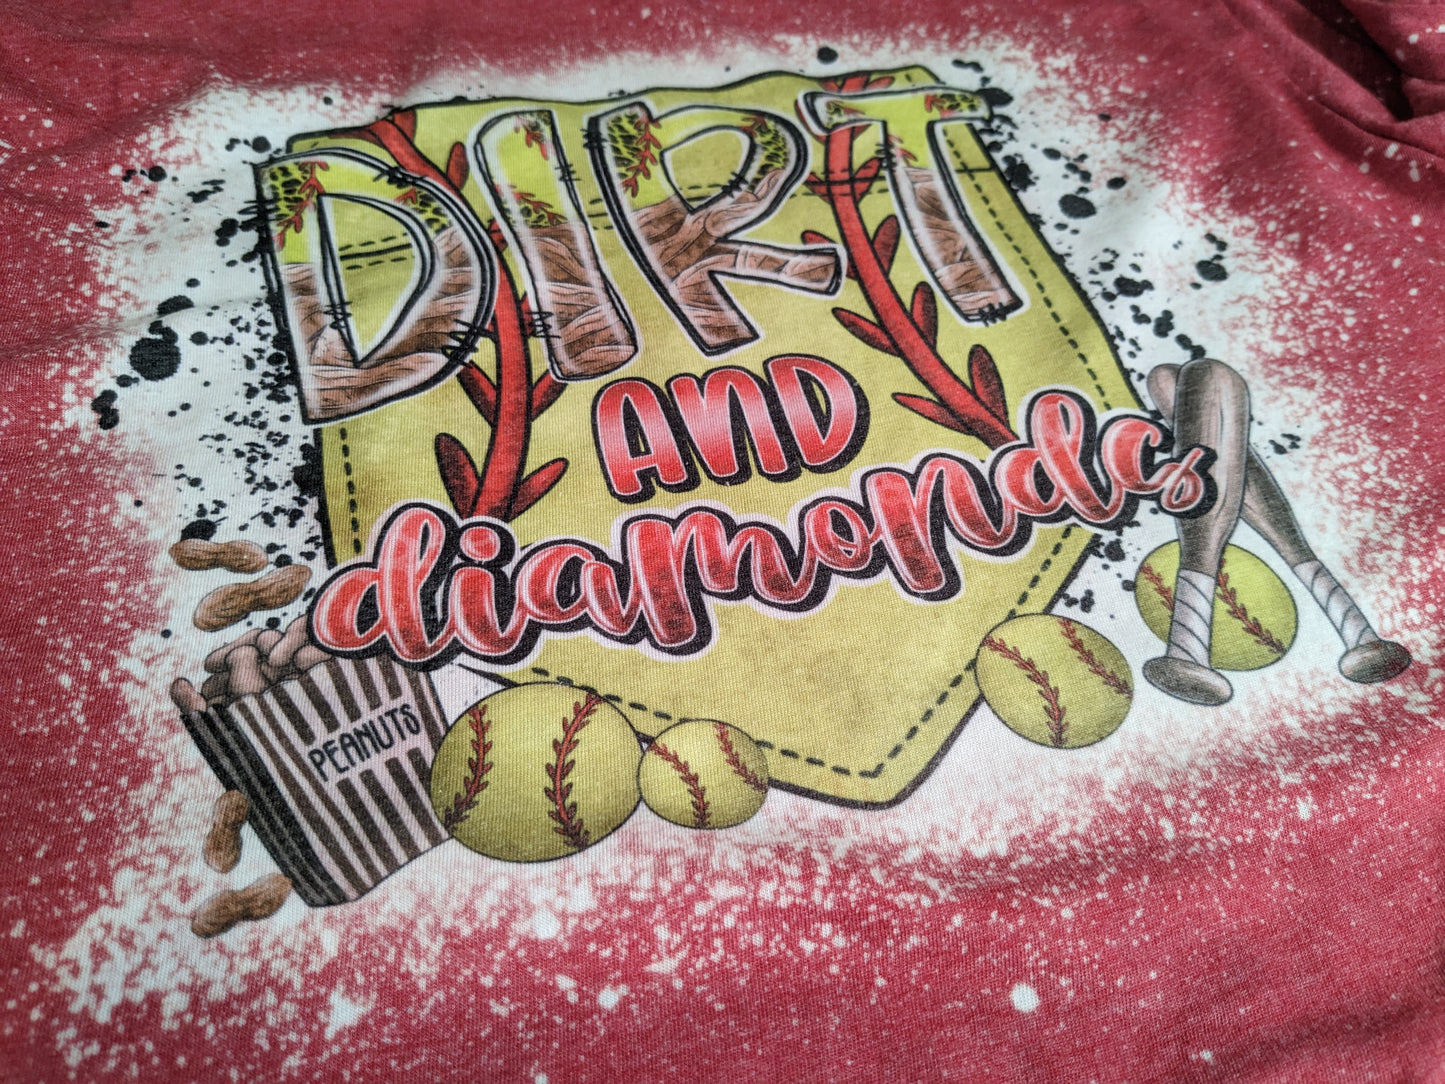 Dirt and Diamonds Softball T-Shirt